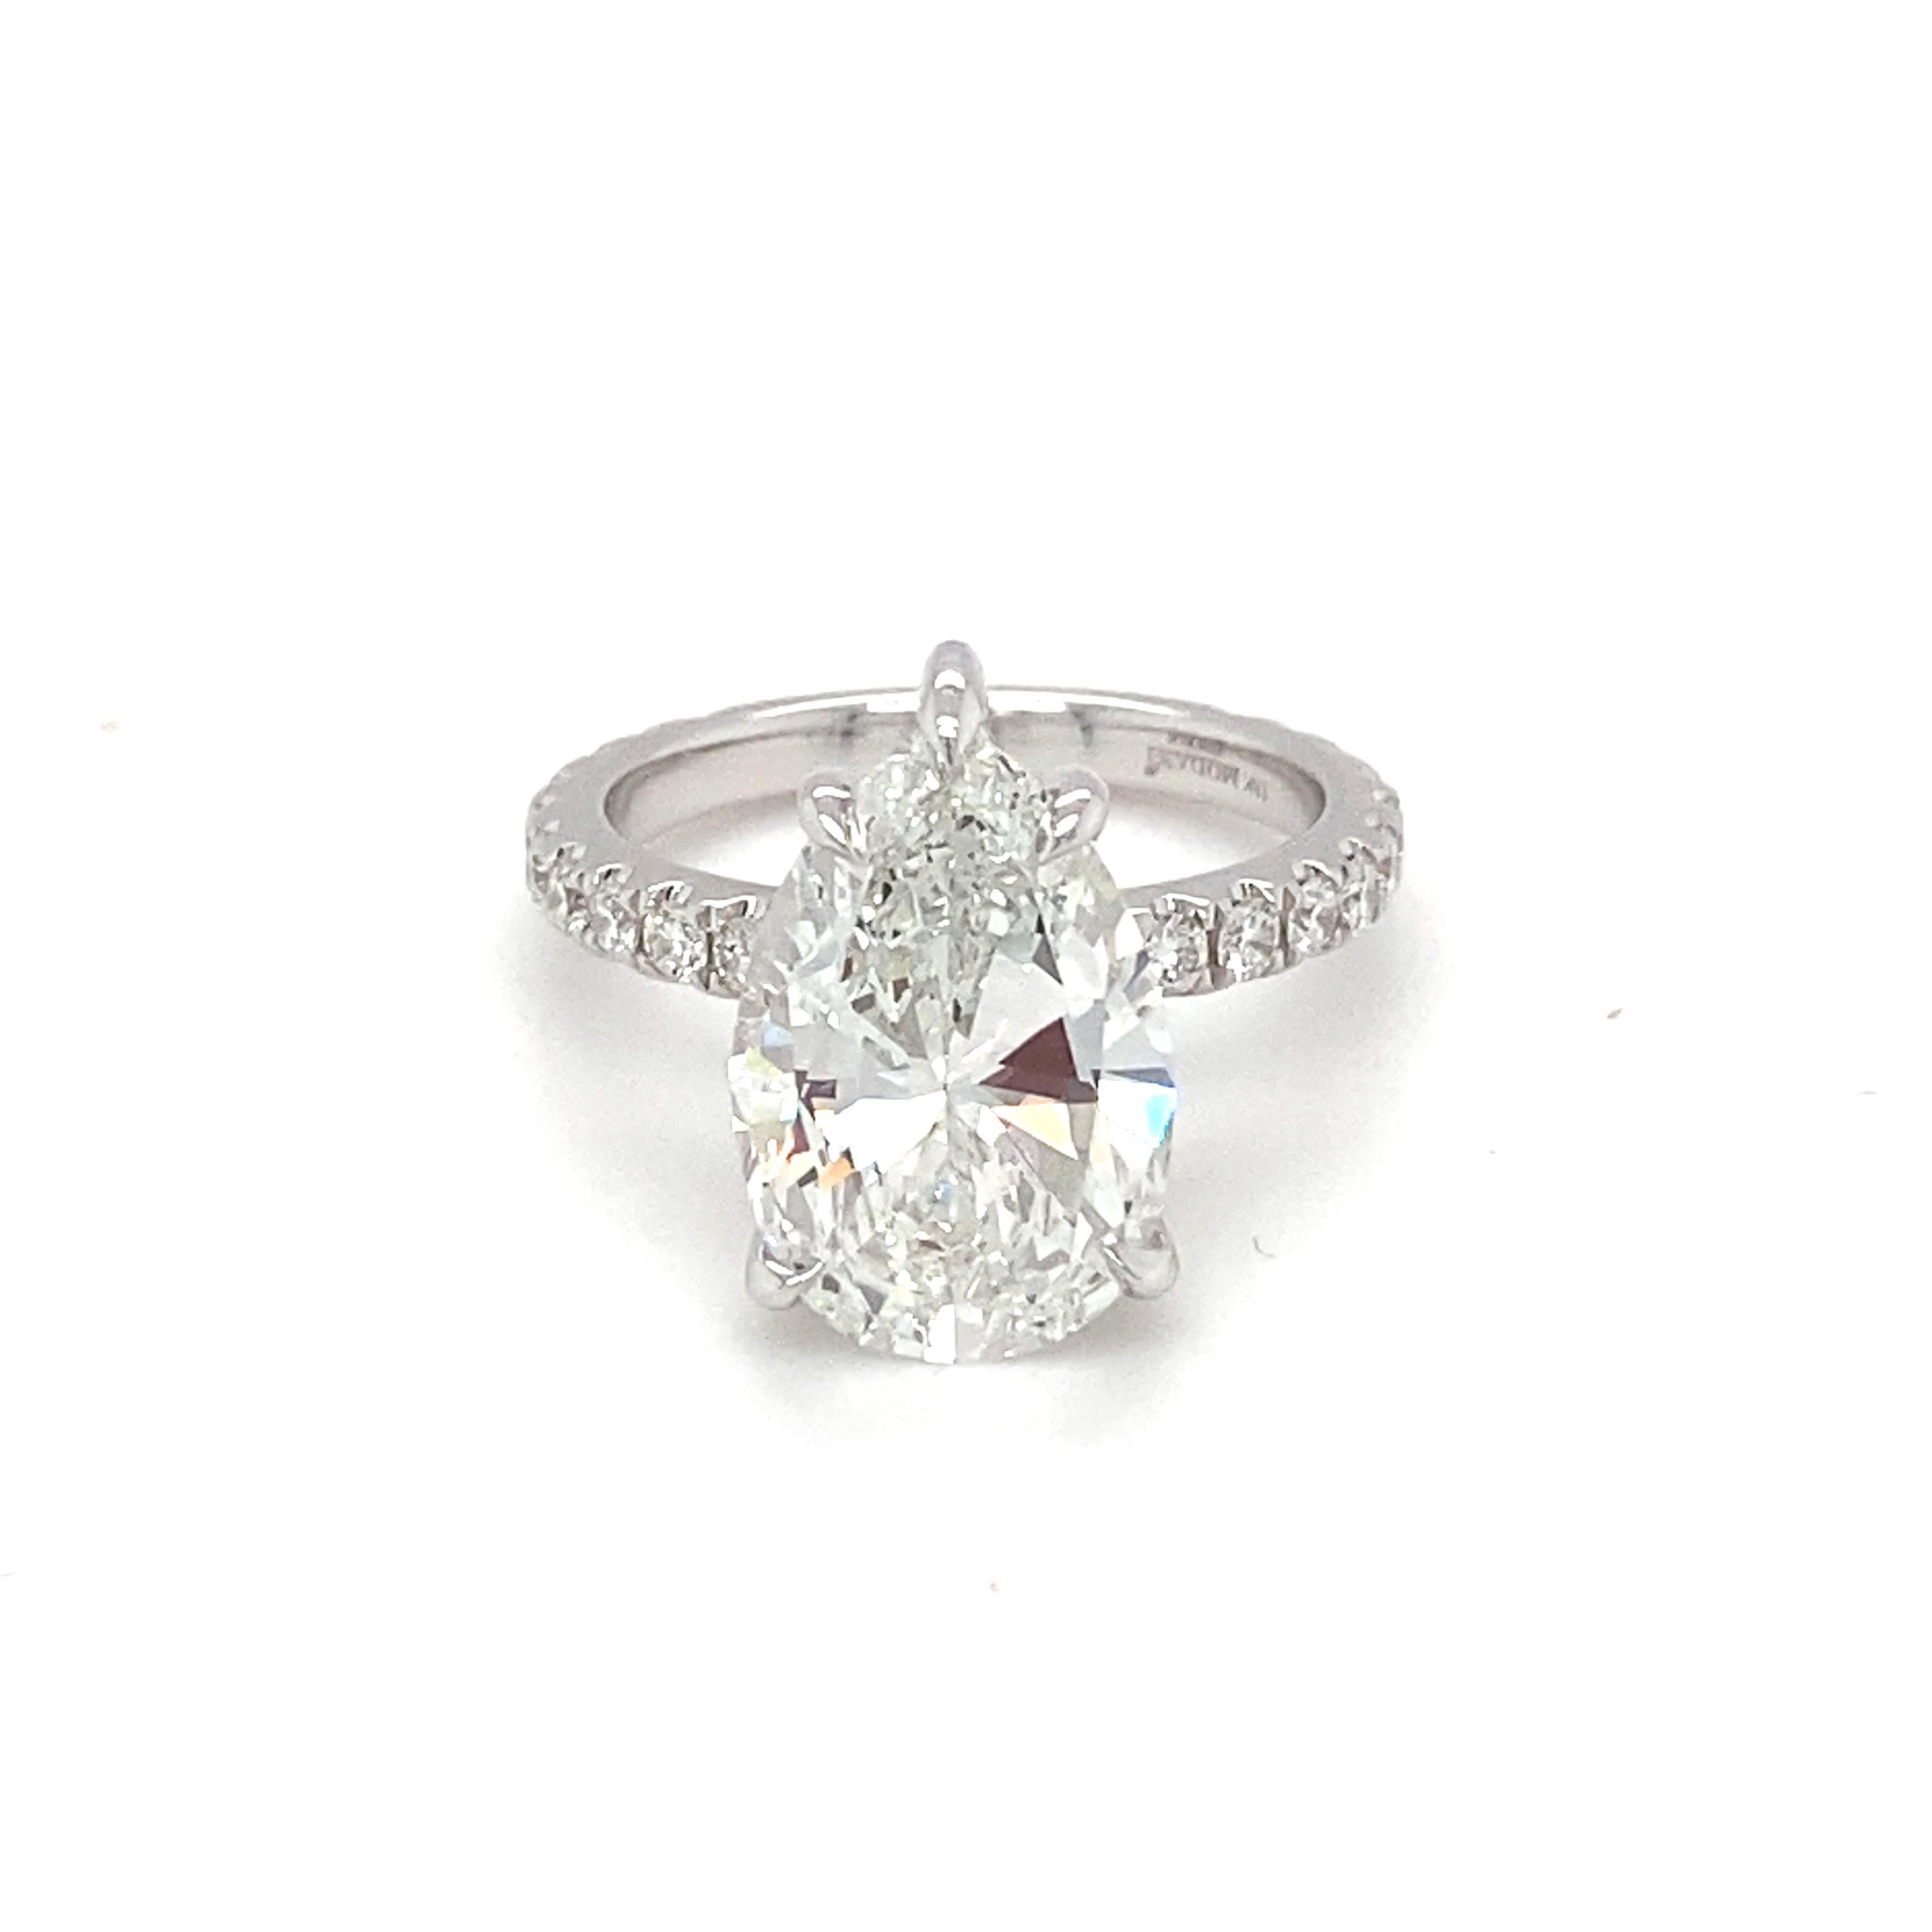 ¡Este anillo de compromiso de diamantes en forma de pera H VS1 de 5,03 quilates certificado por el GIA es asombrosamente increíble! Montada en oro blanco de 18 quilates y hecha a mano por artesanos altamente cualificados. Cada detalle ha sido